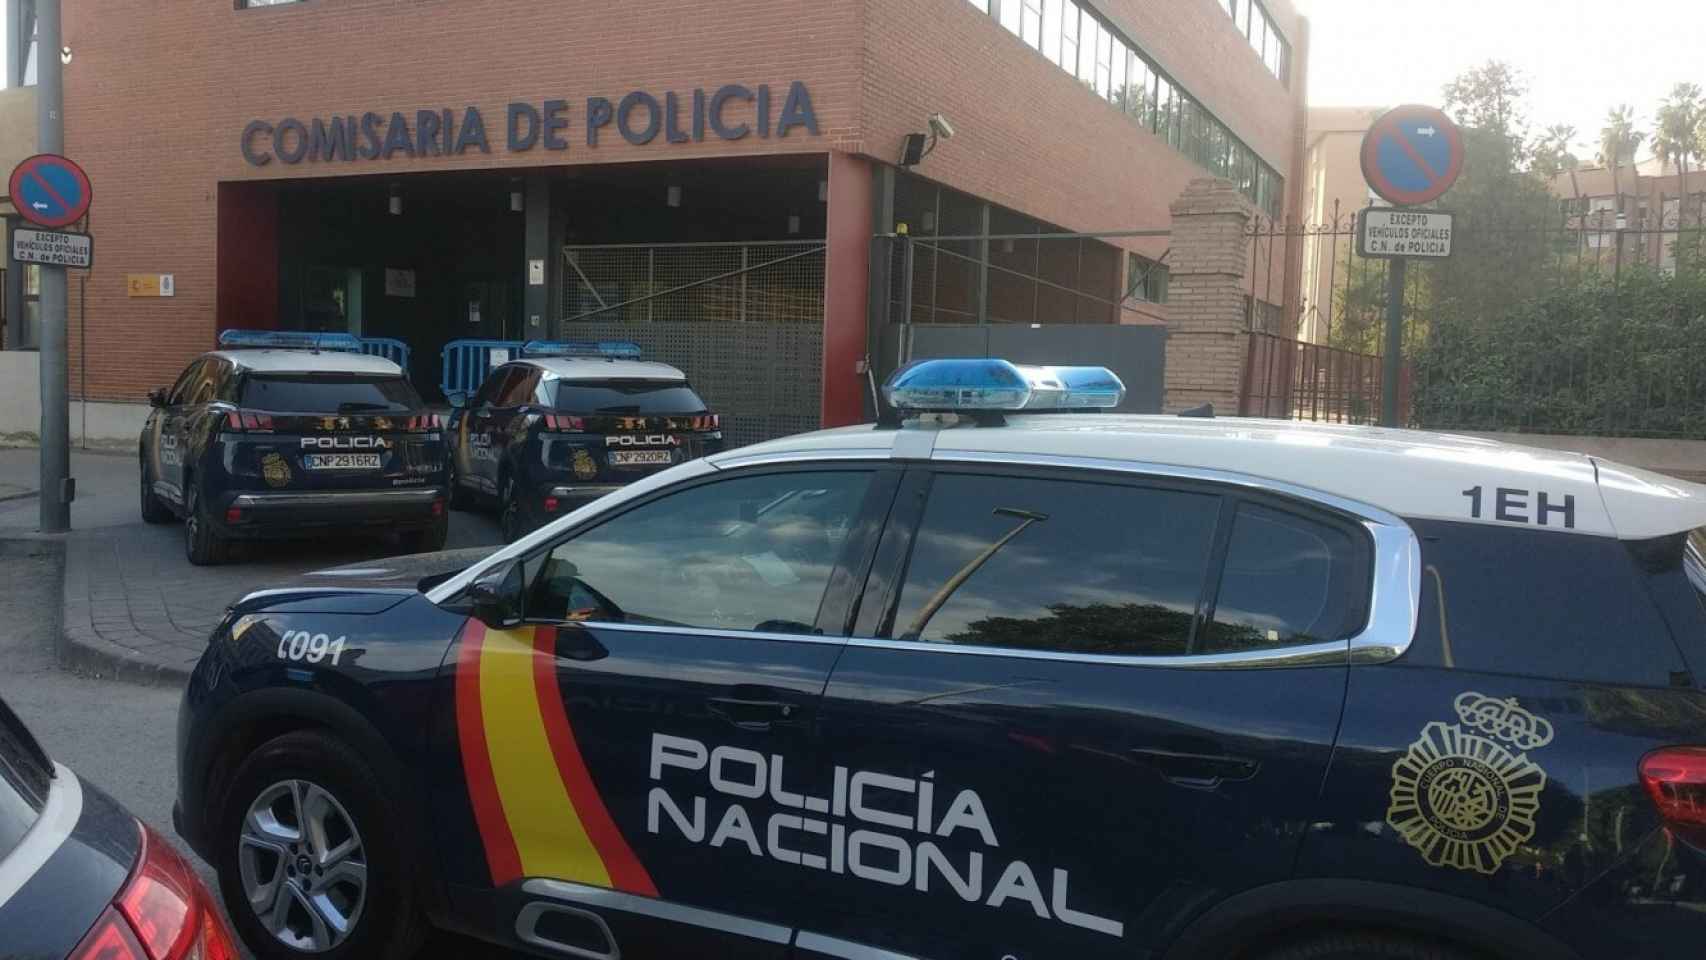 Comisaría que la Policía Nacional tiene en el Barrio de El Carmen en Murcia.